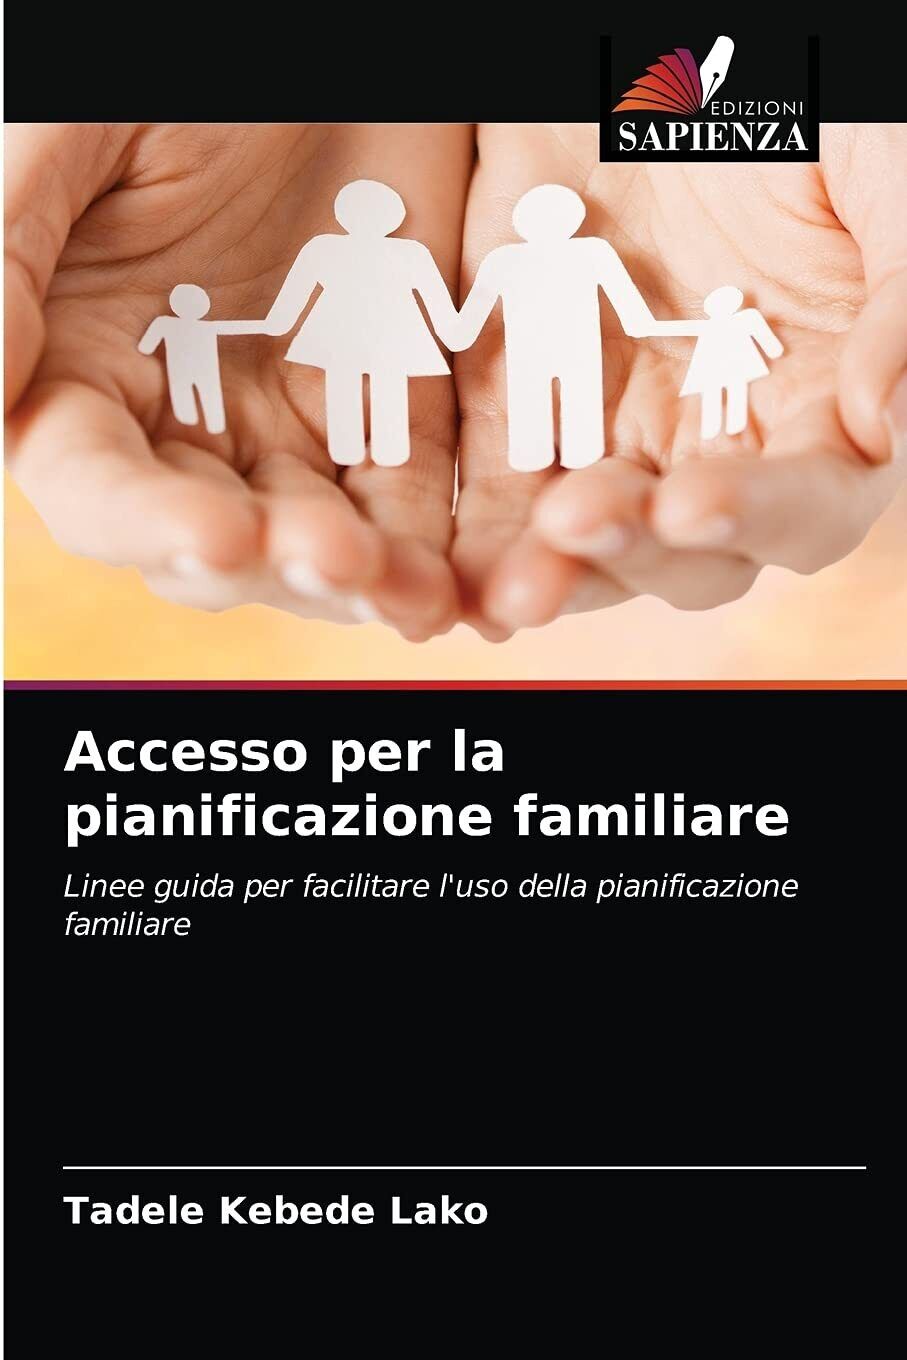 Accesso per la pianificazione familiare - TADELE KEBEDE LAKO - Sapienza, 2021